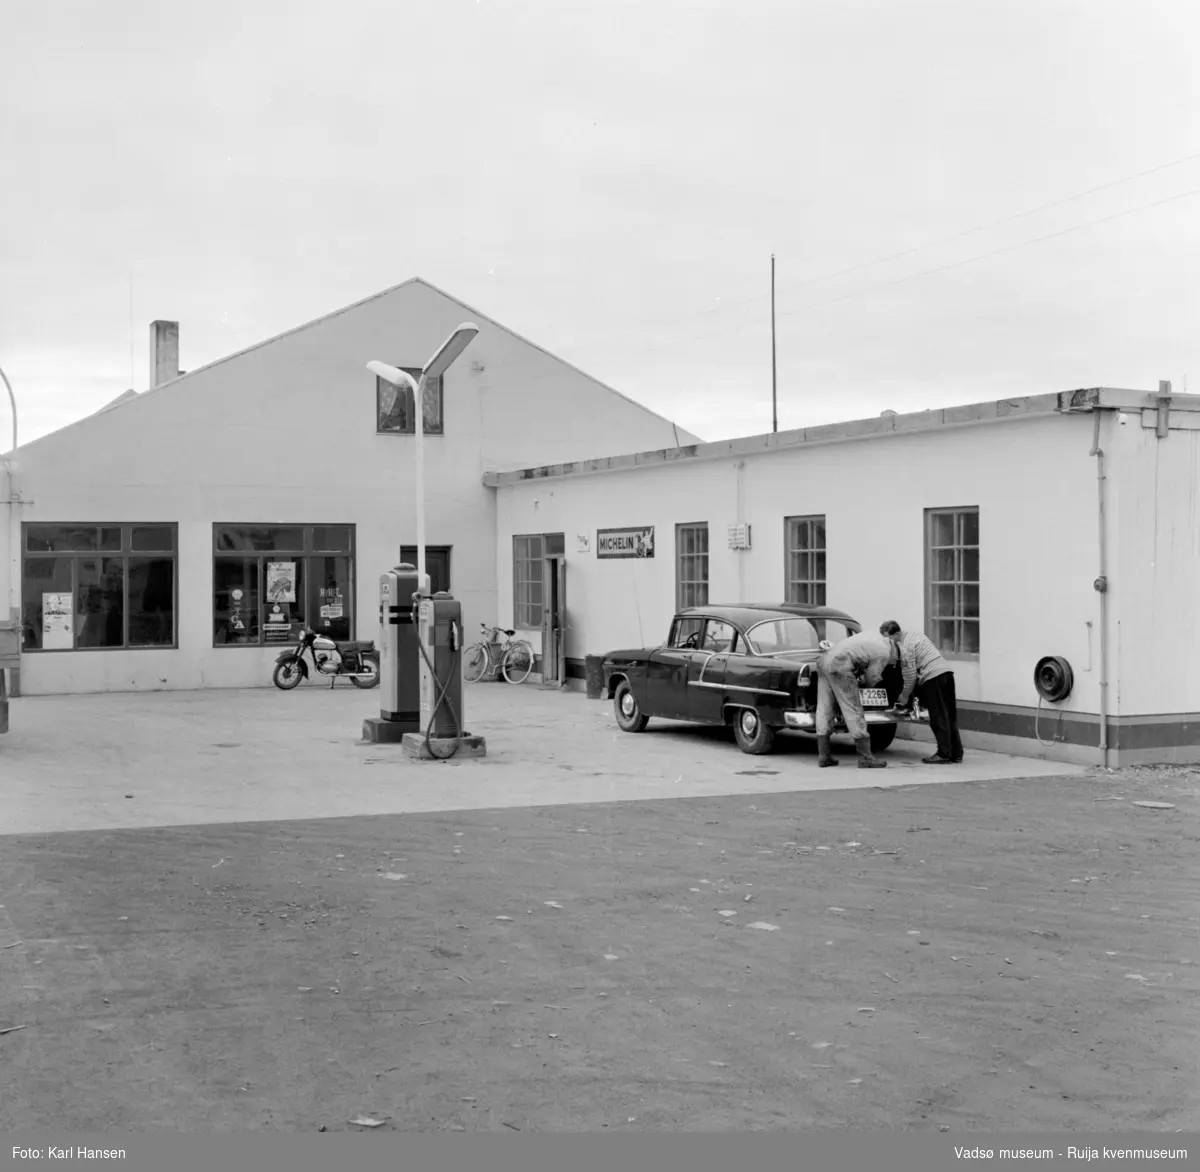 Vadsø sentrum 1959. Shell Bensinstasjon og tankanlegg i Tollbugata. Reklameskilt, moped, drivstoffpumper og en drosje i forkant av bygningen.